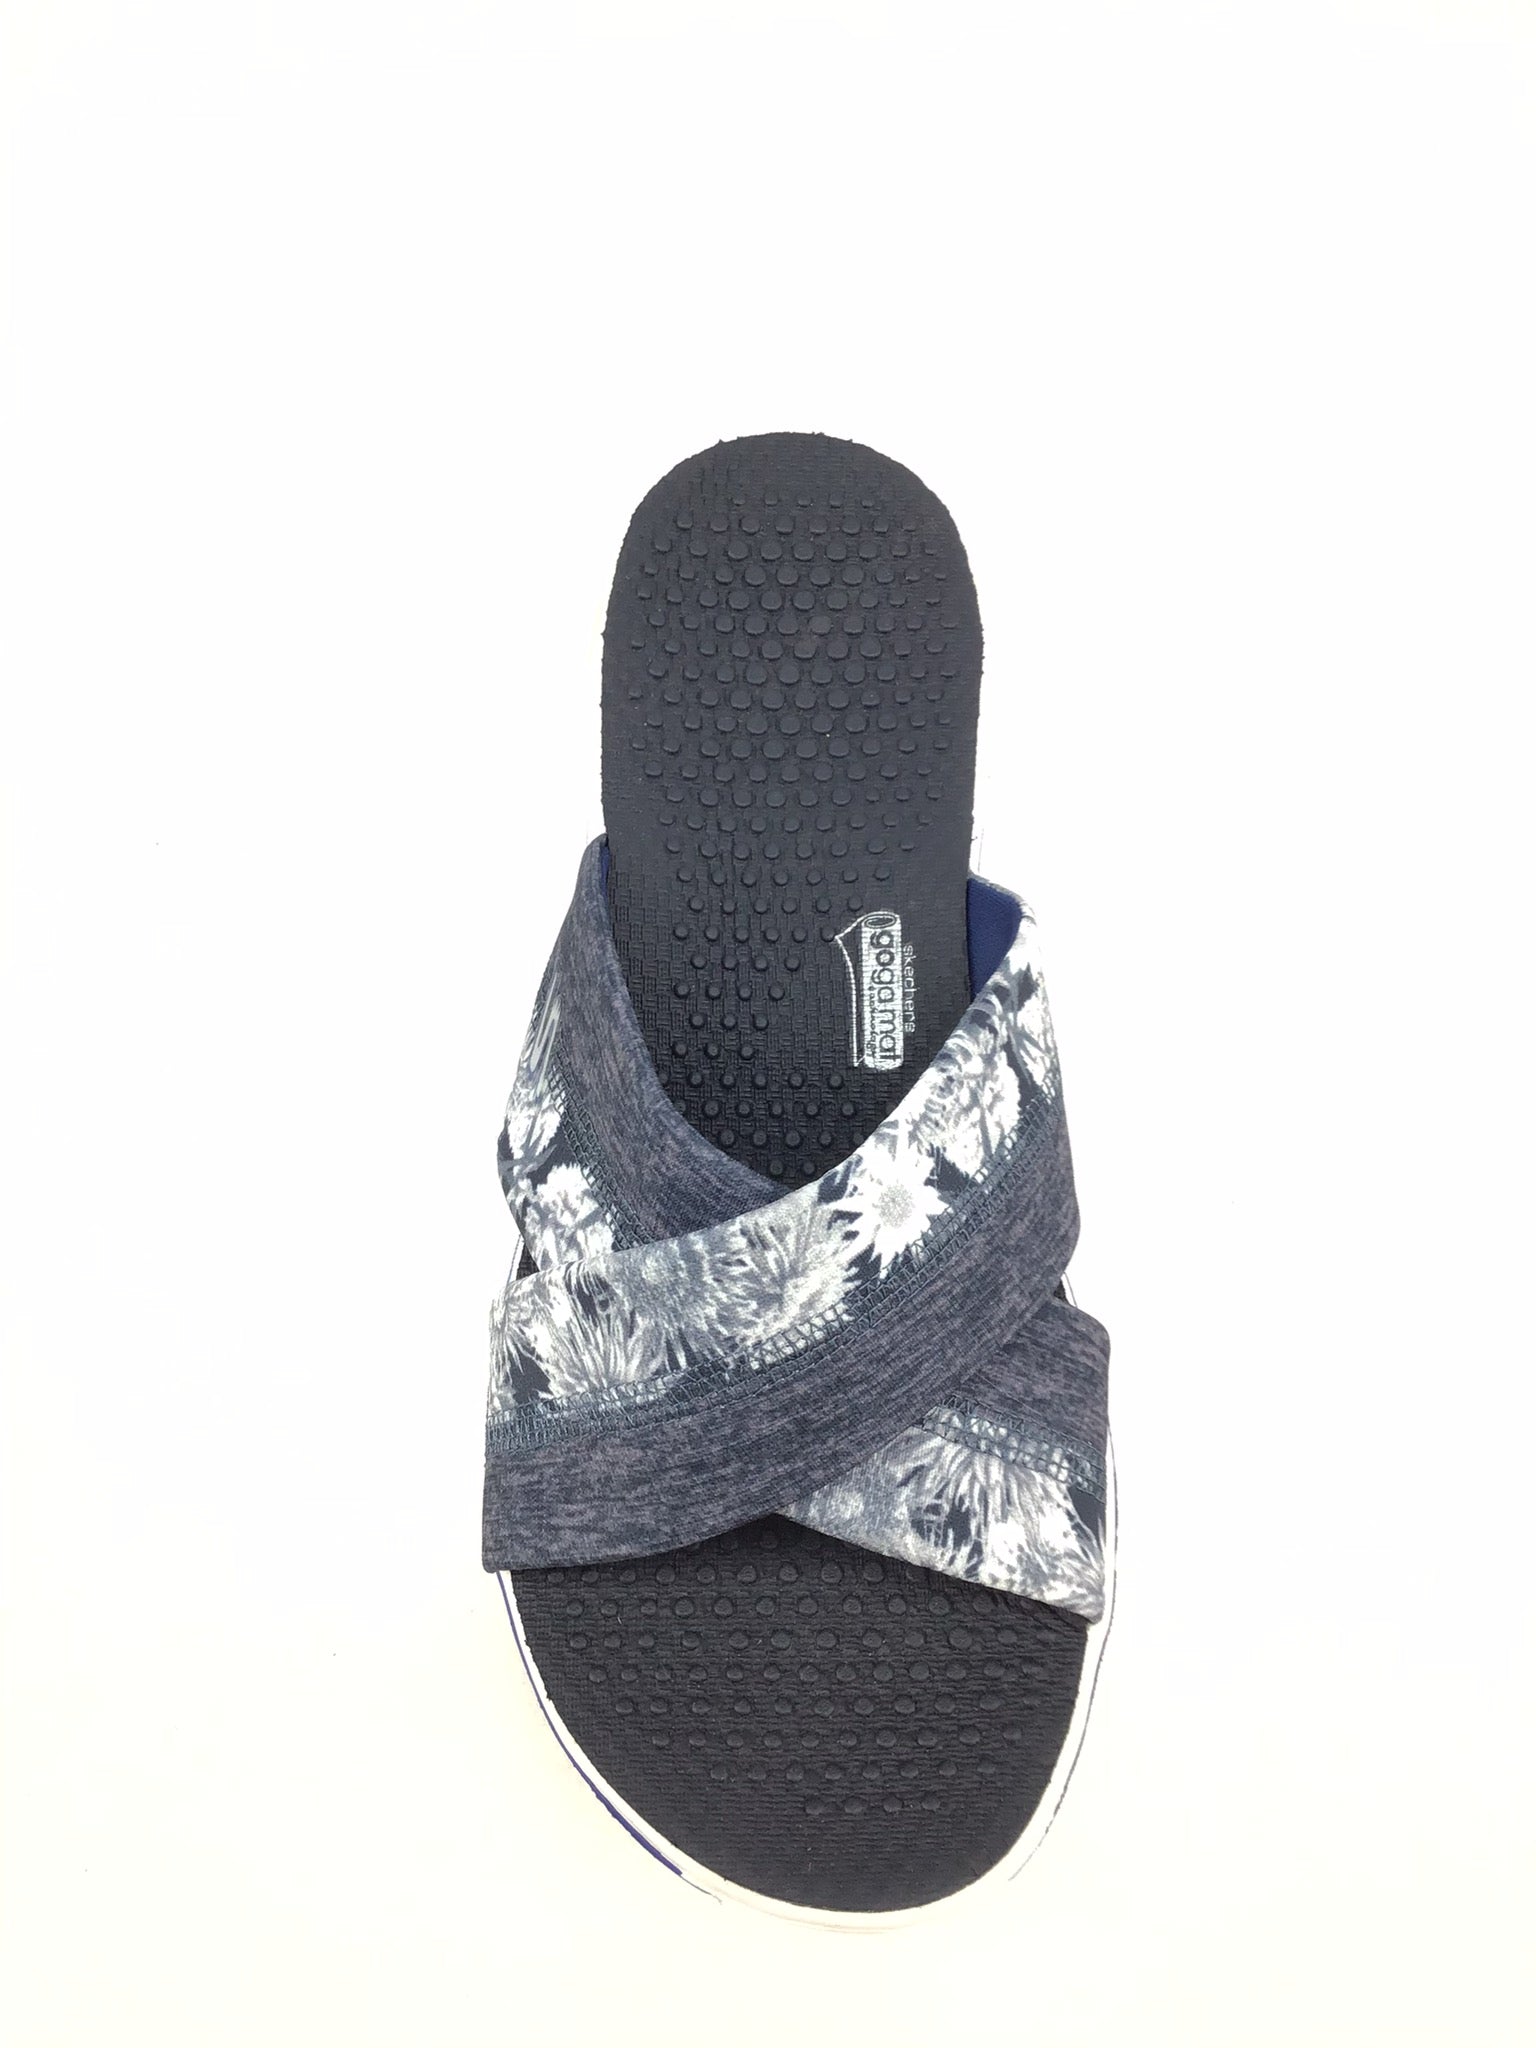 Skechers Goga Mat 13632 Slide On Flip Flops Thong Sandals Women's Size 9  Black